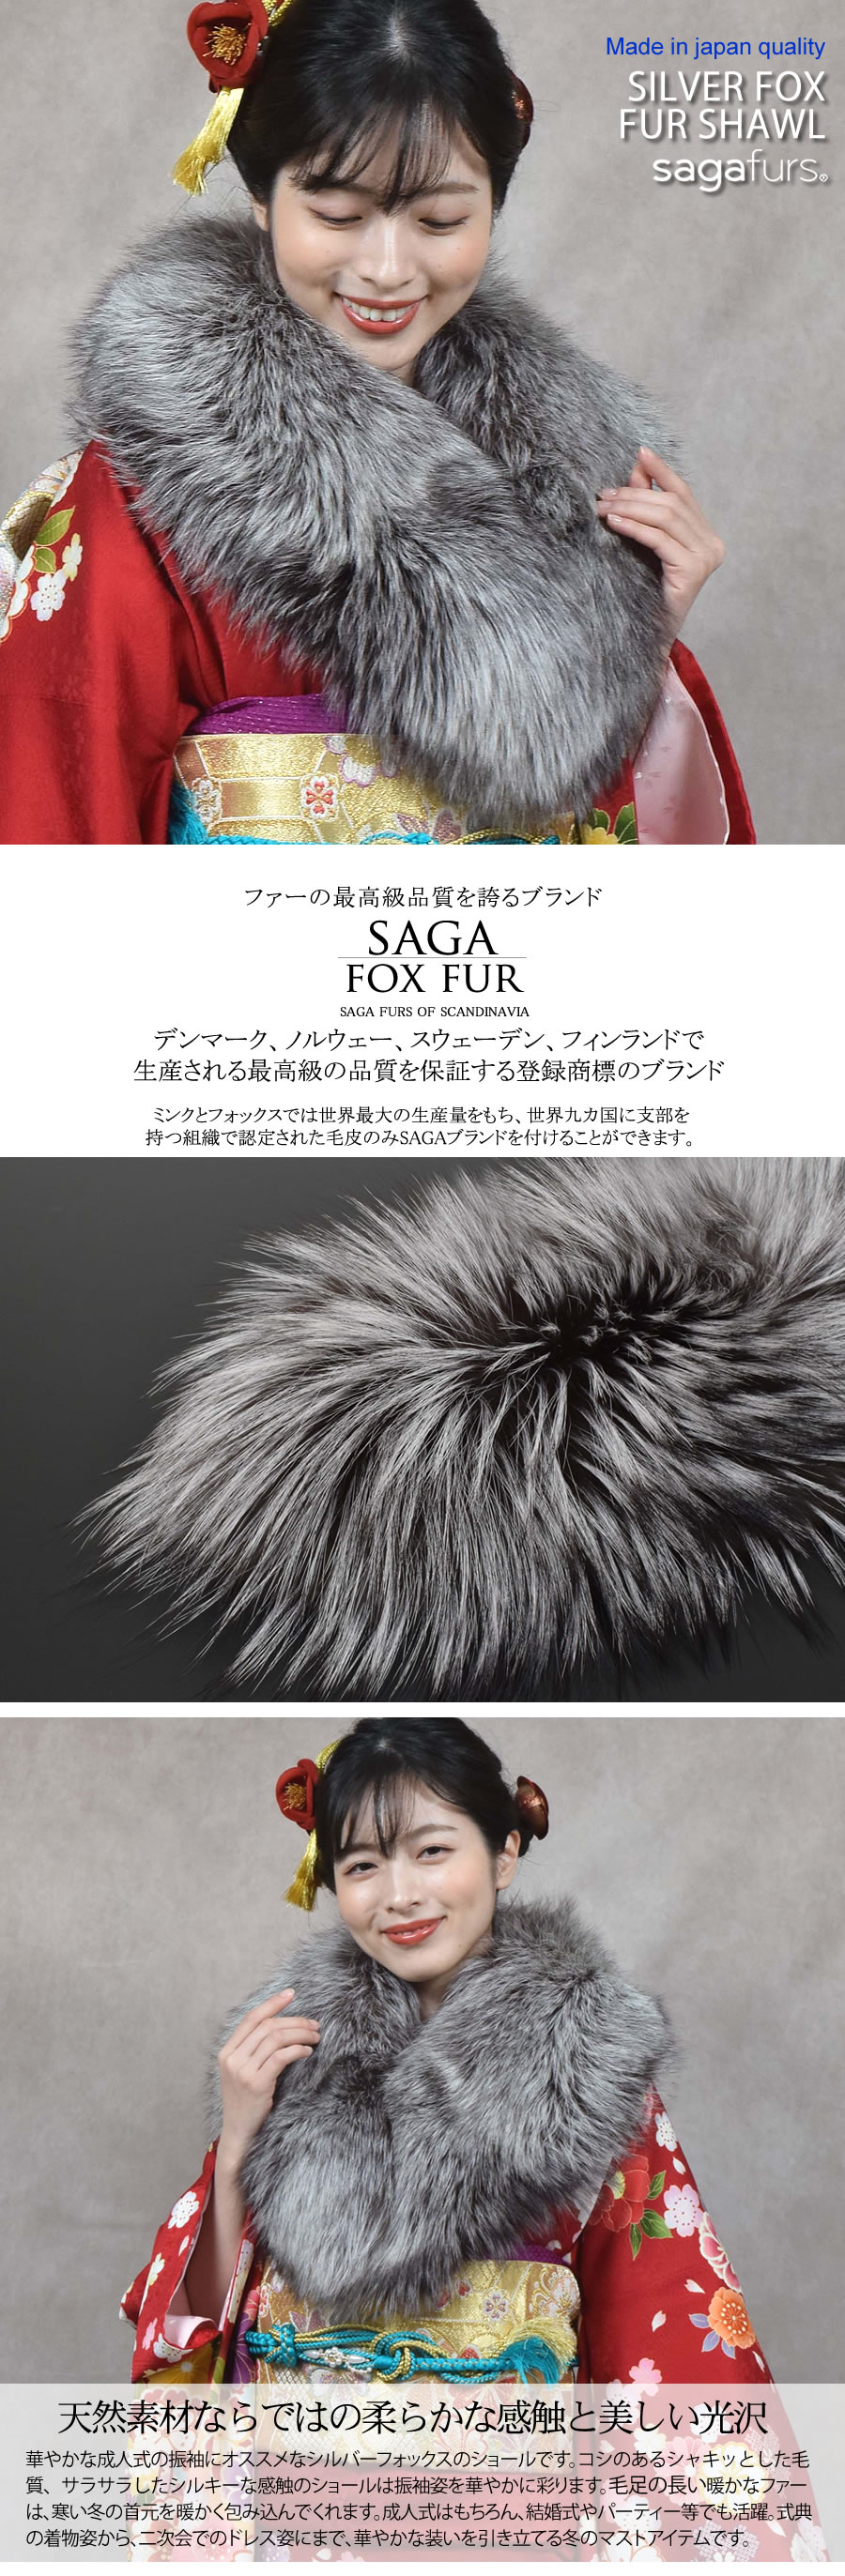 日本製 成人式 SAGA シルバー フォックス ファー ストール ショール 振袖 着物 和装 晴れ着 毛皮 大判(化粧箱付き)(fs9011s)